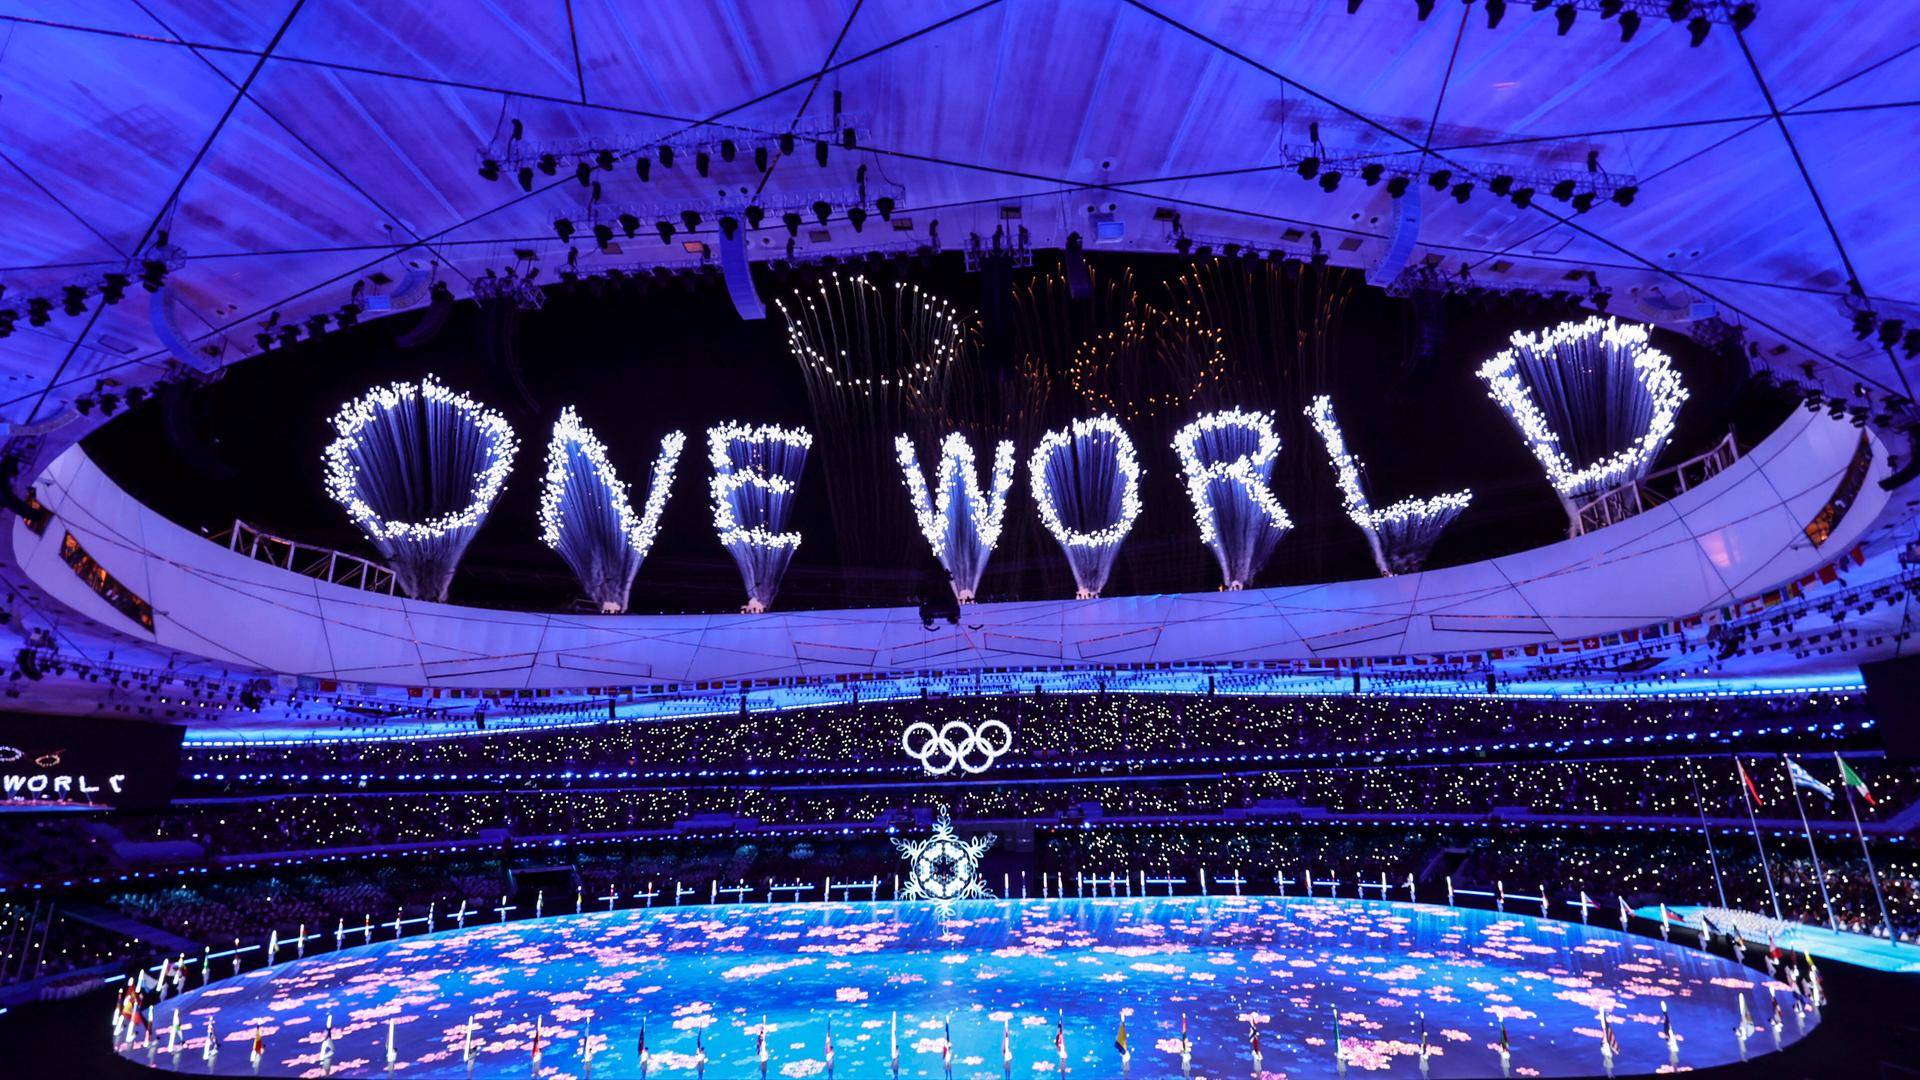 Bei der Abschlussfeier der Olympischen Winterspiele in Peking wird über dem Stadion durch ein Feuerwerk der Schriftzug "One World" hergestellt.